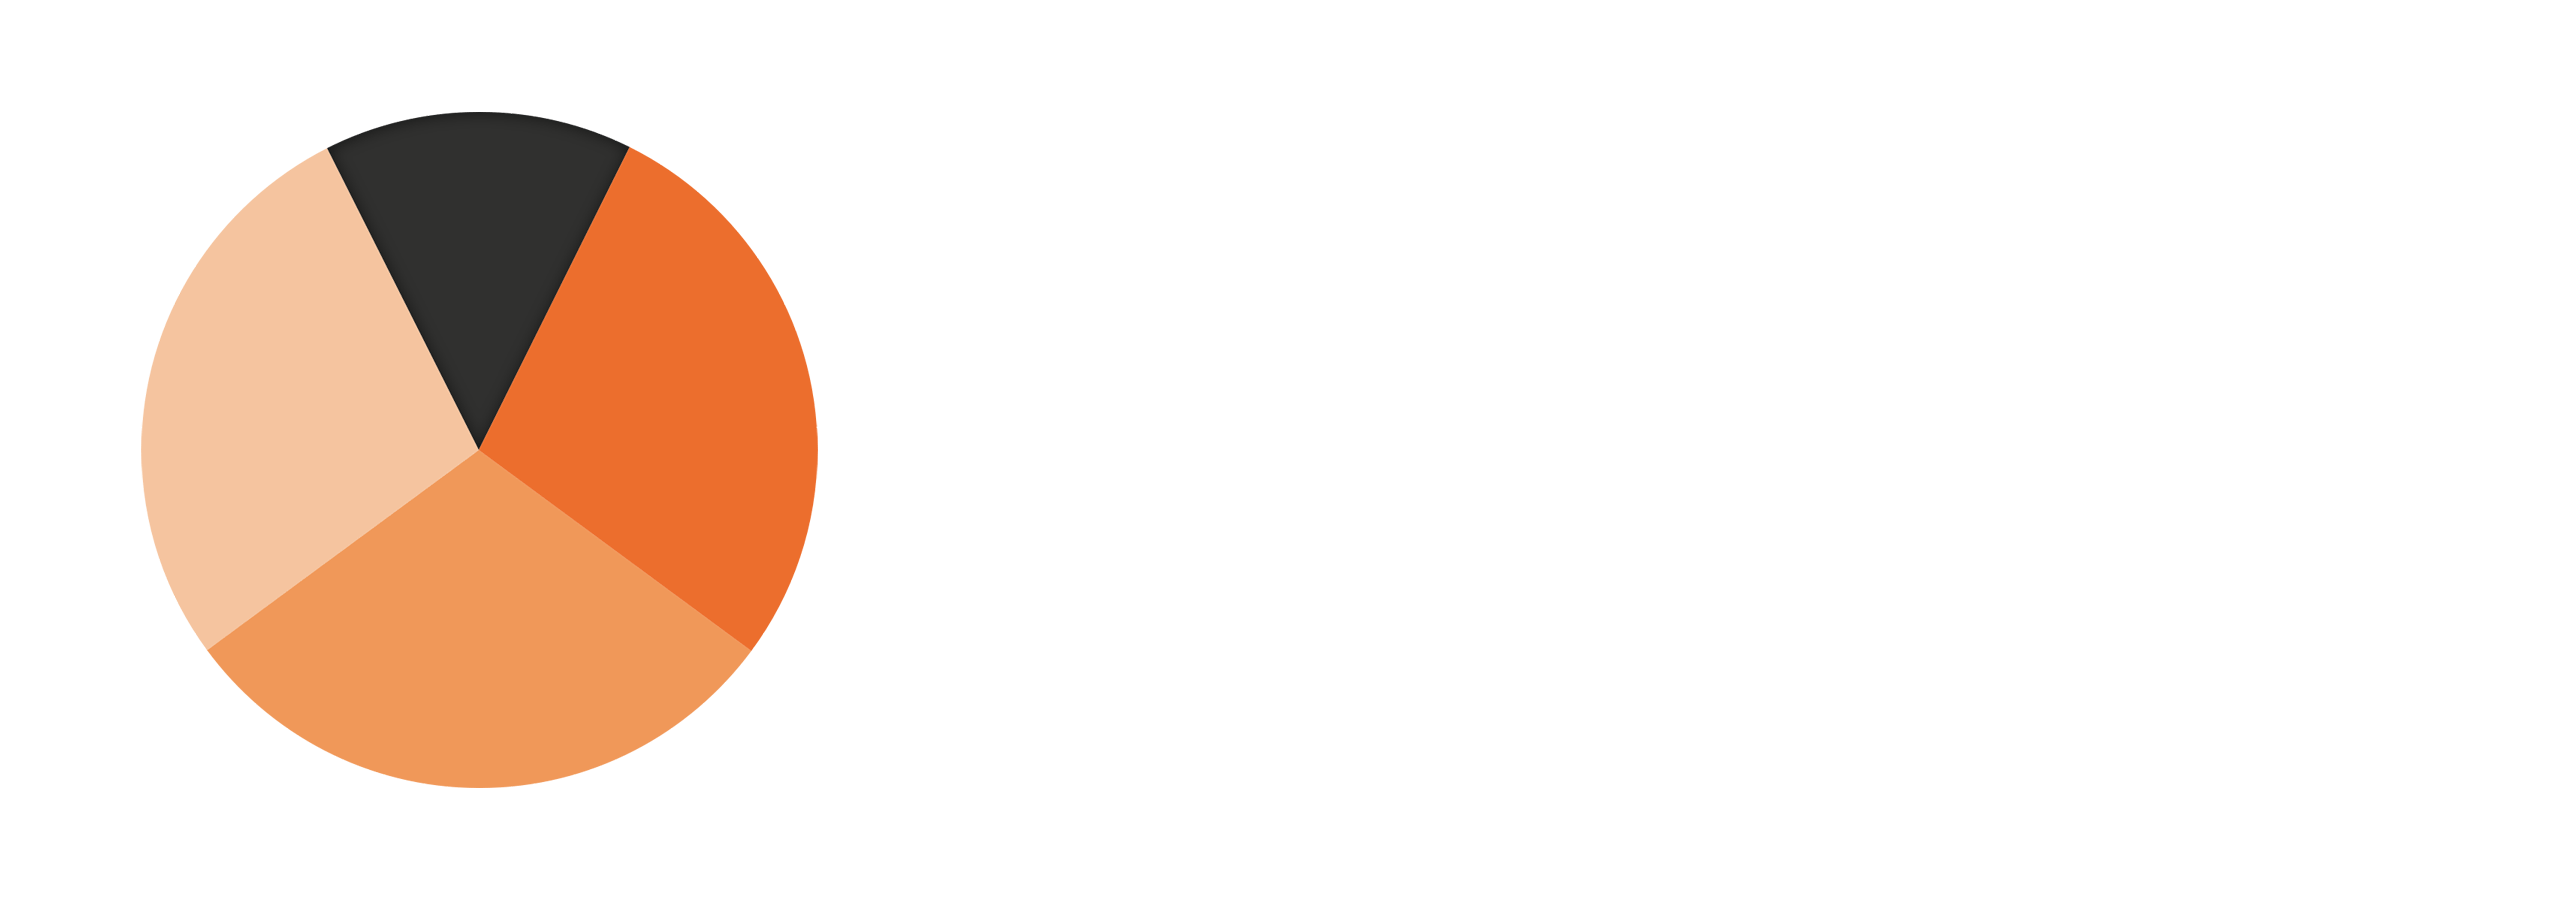 Evidence Based Education logo